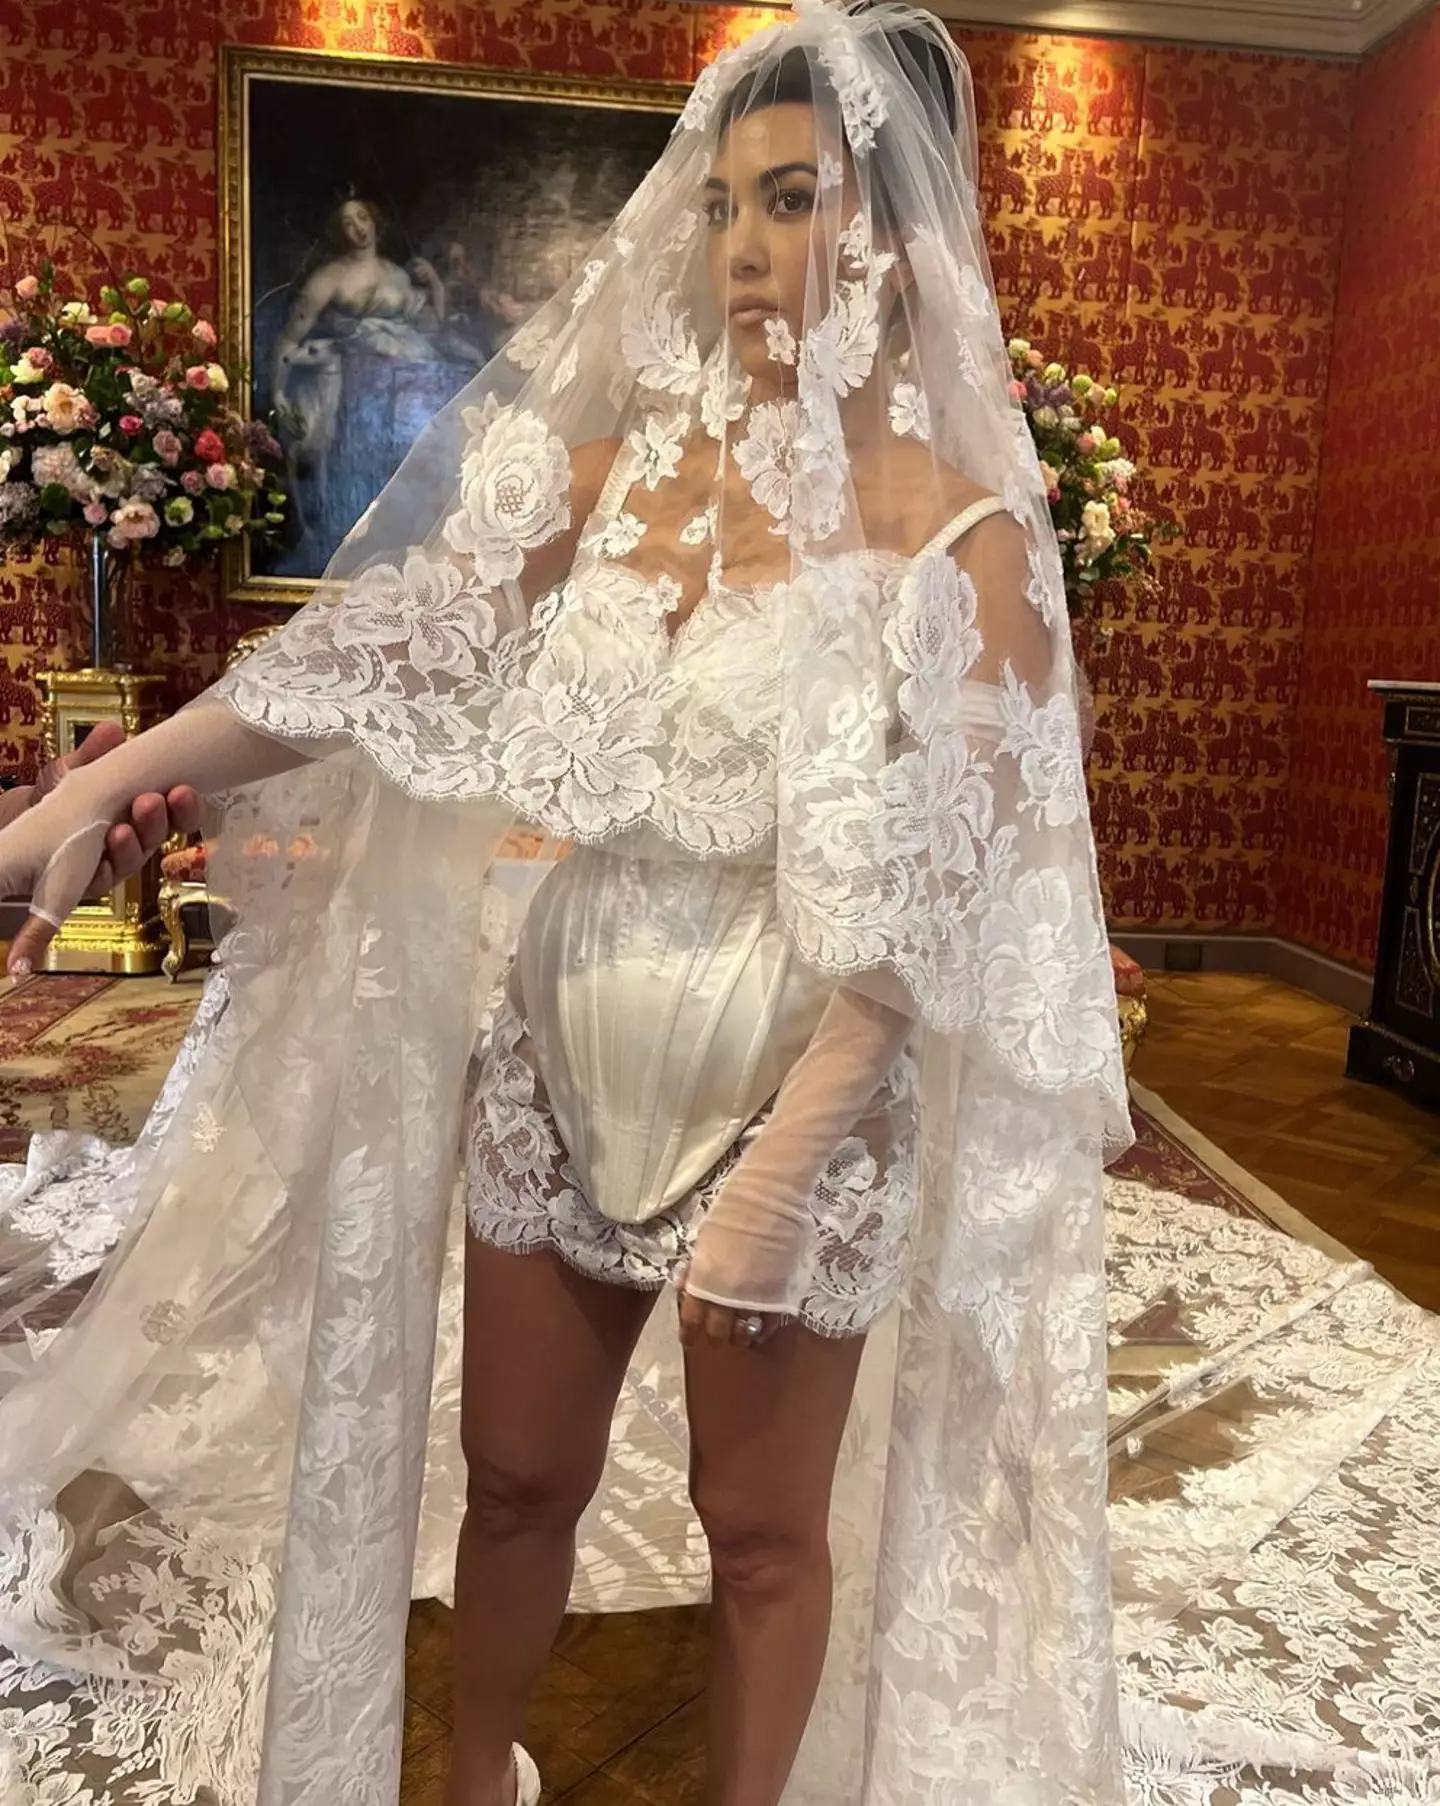 Kourtney's wedding in Portofino was hosted by Dolce and Gabbana.